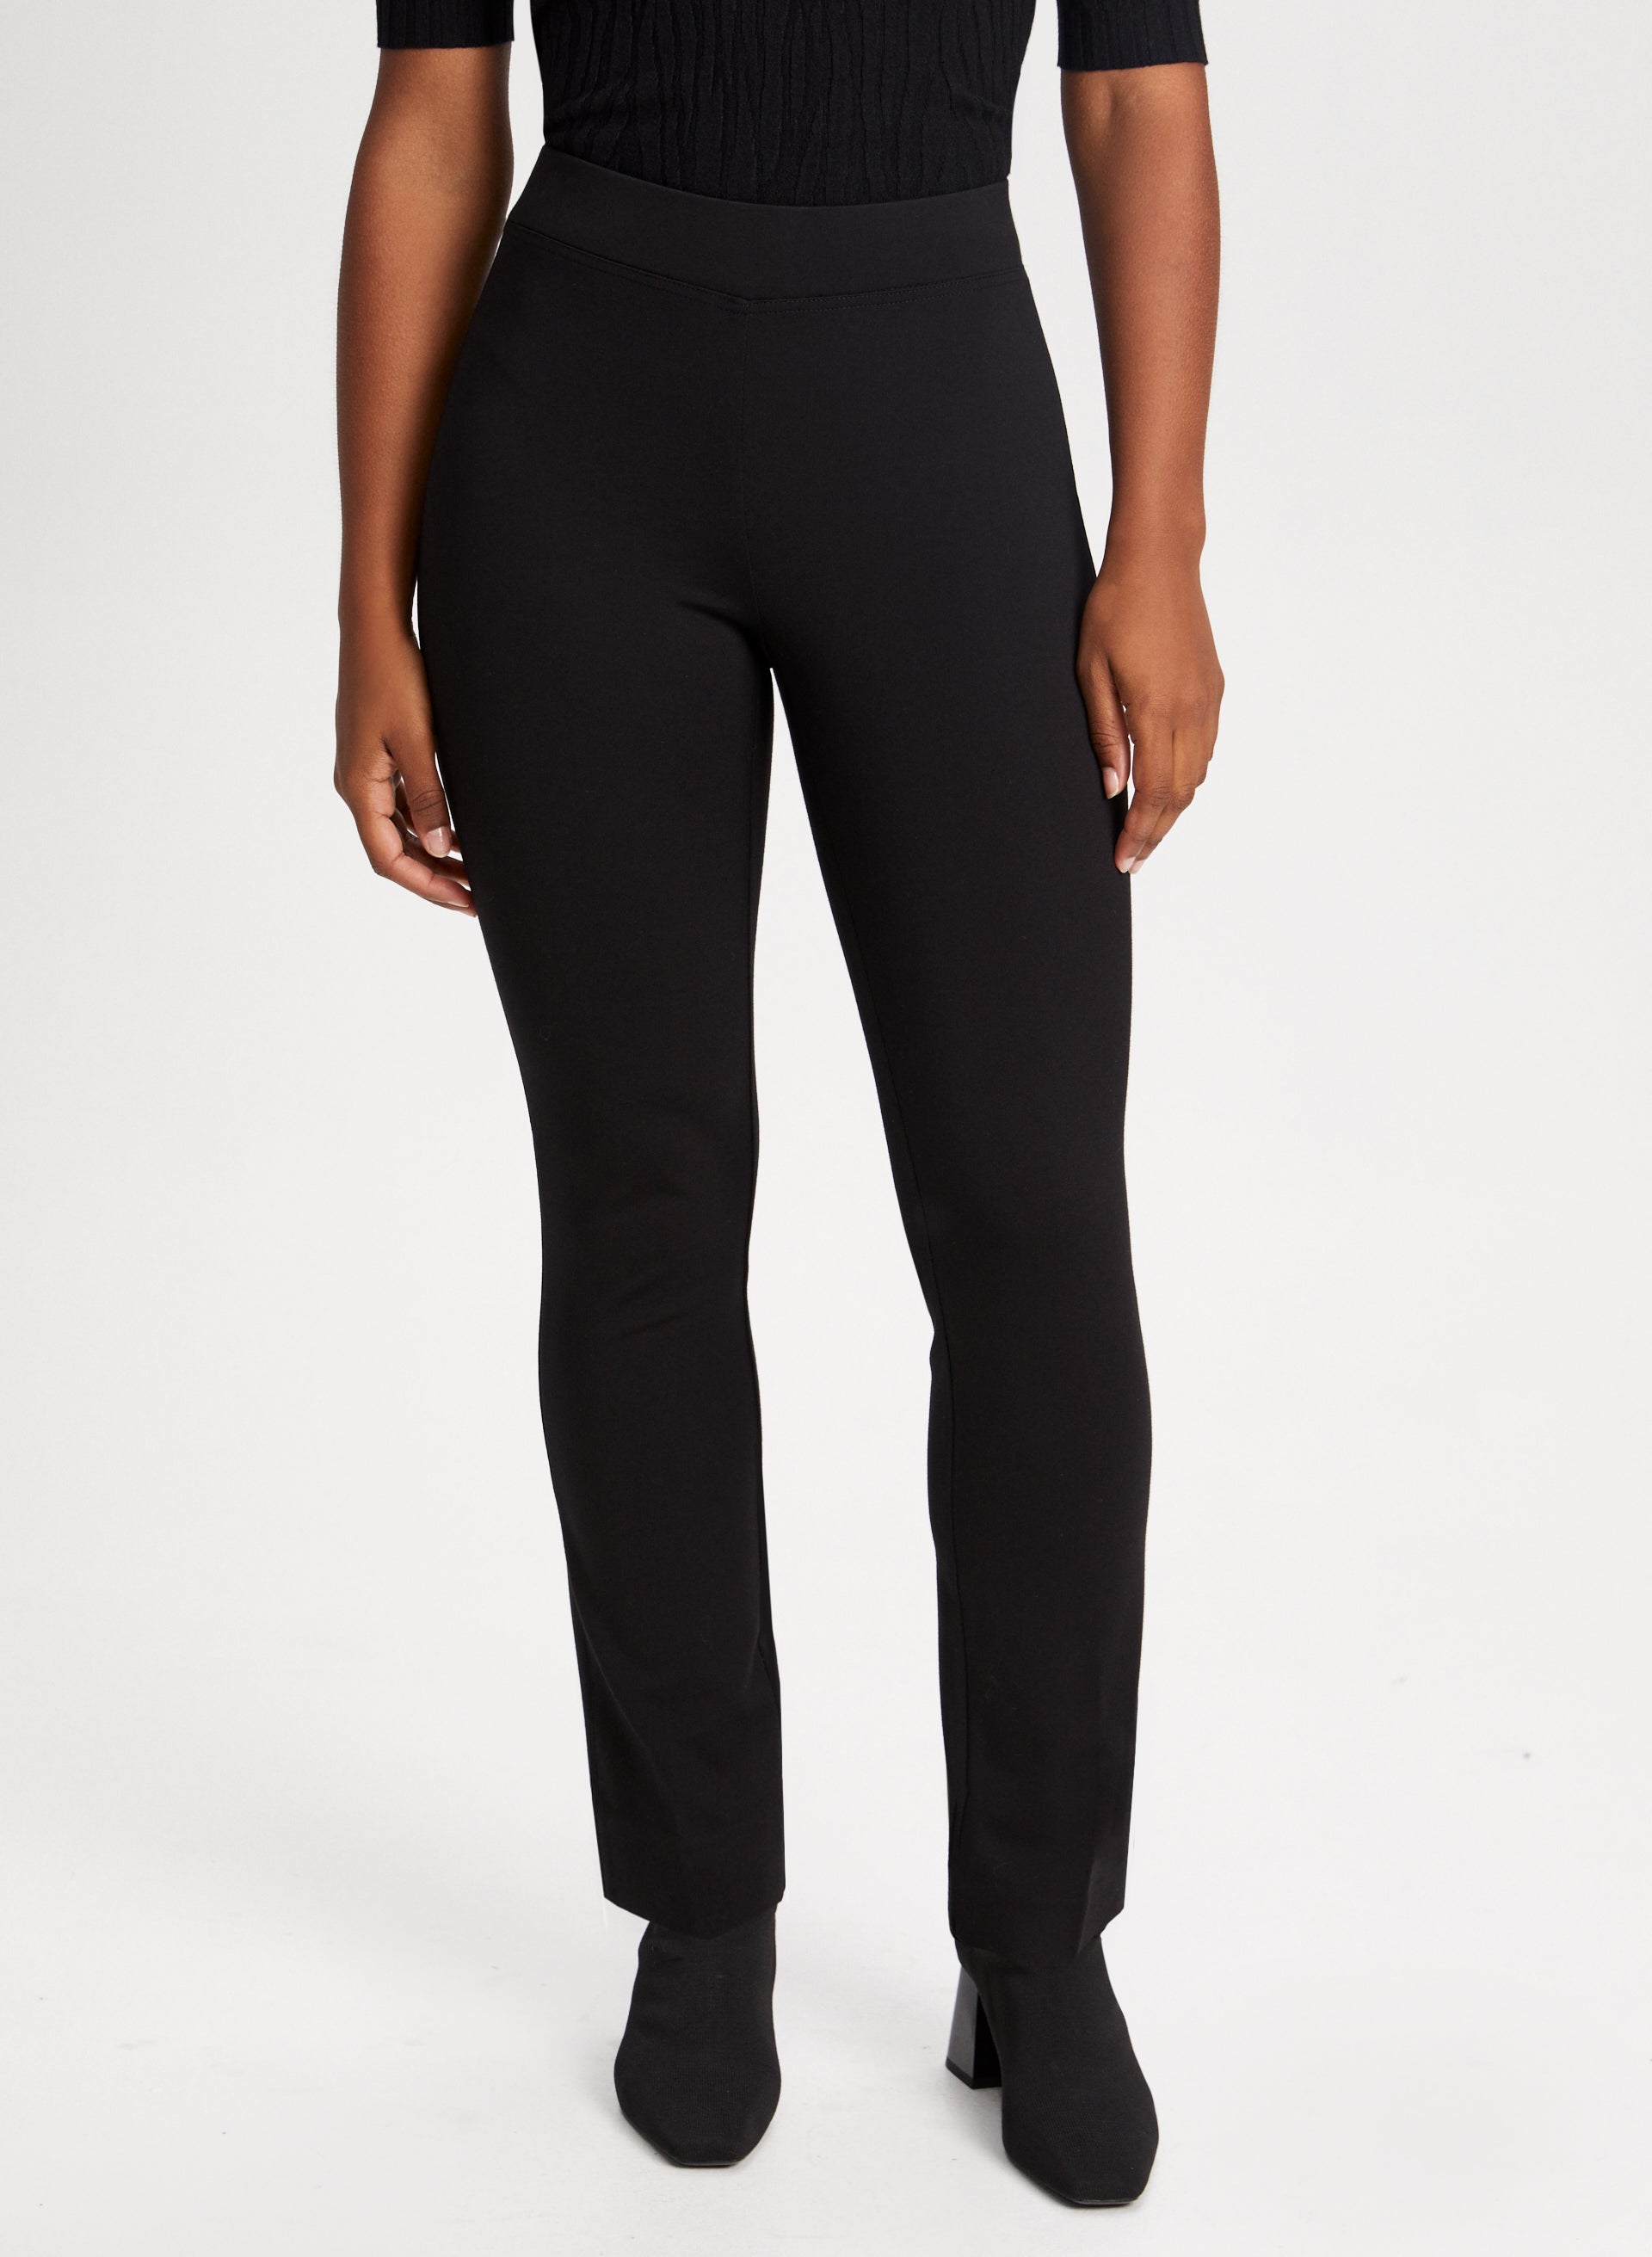 I.e. PETITE IE brand black slacks pants womens GUC rn13711 10P size 10